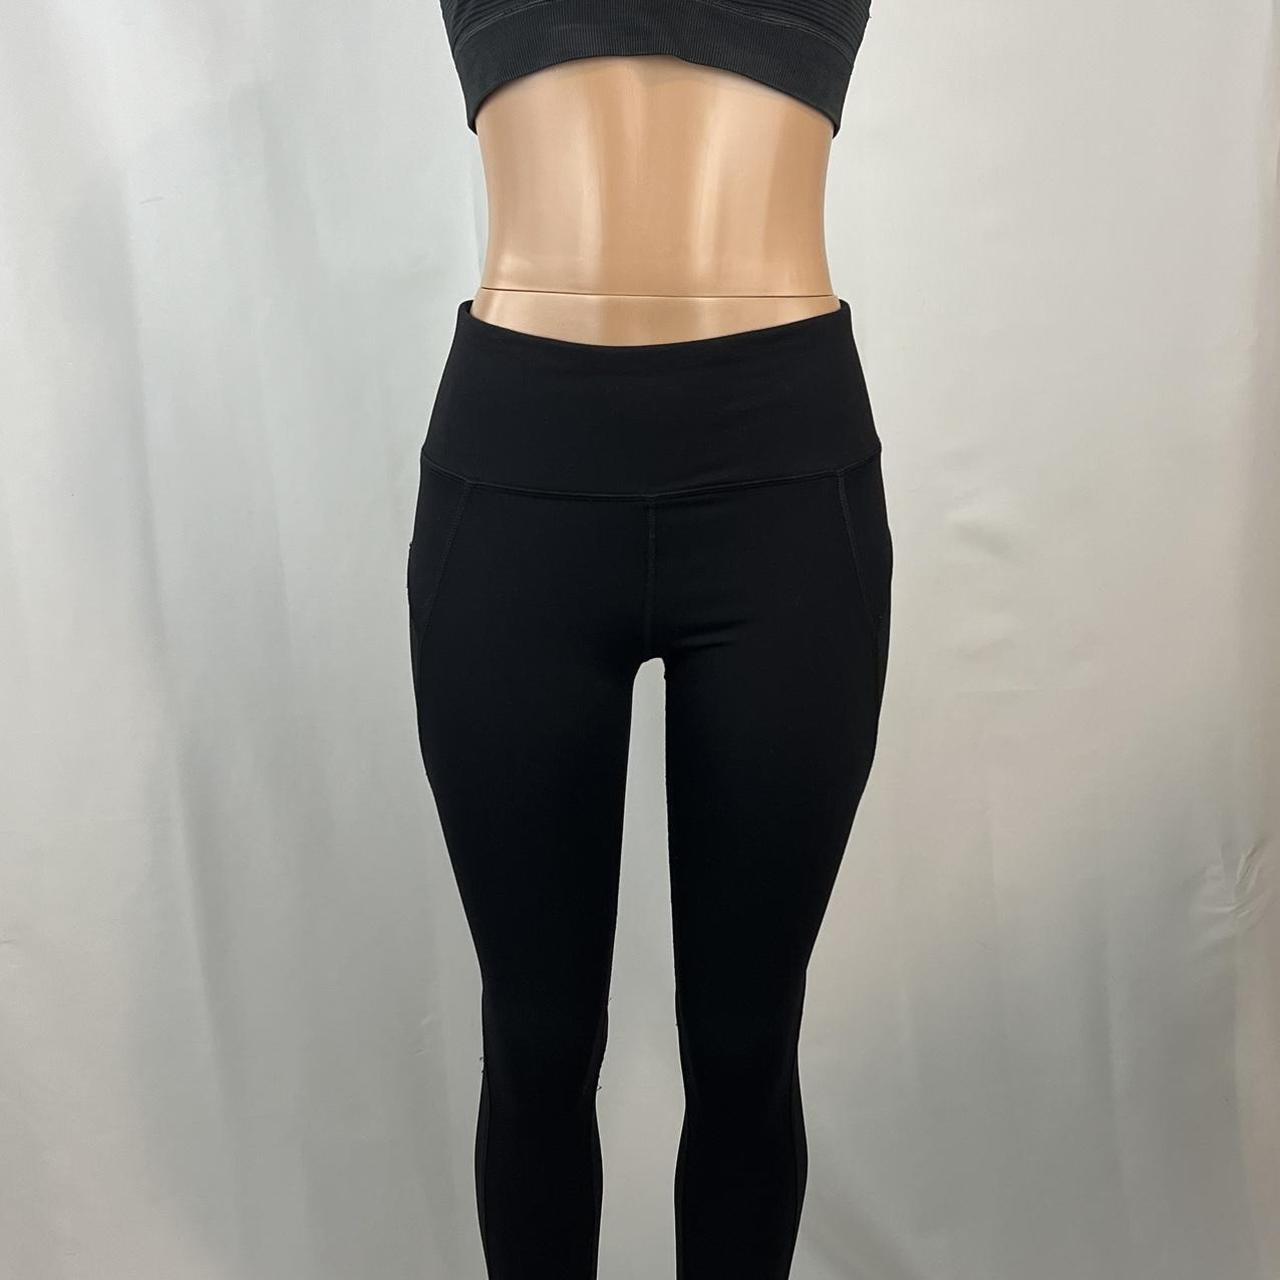 Black leggings size M from RBX #leggings - Depop